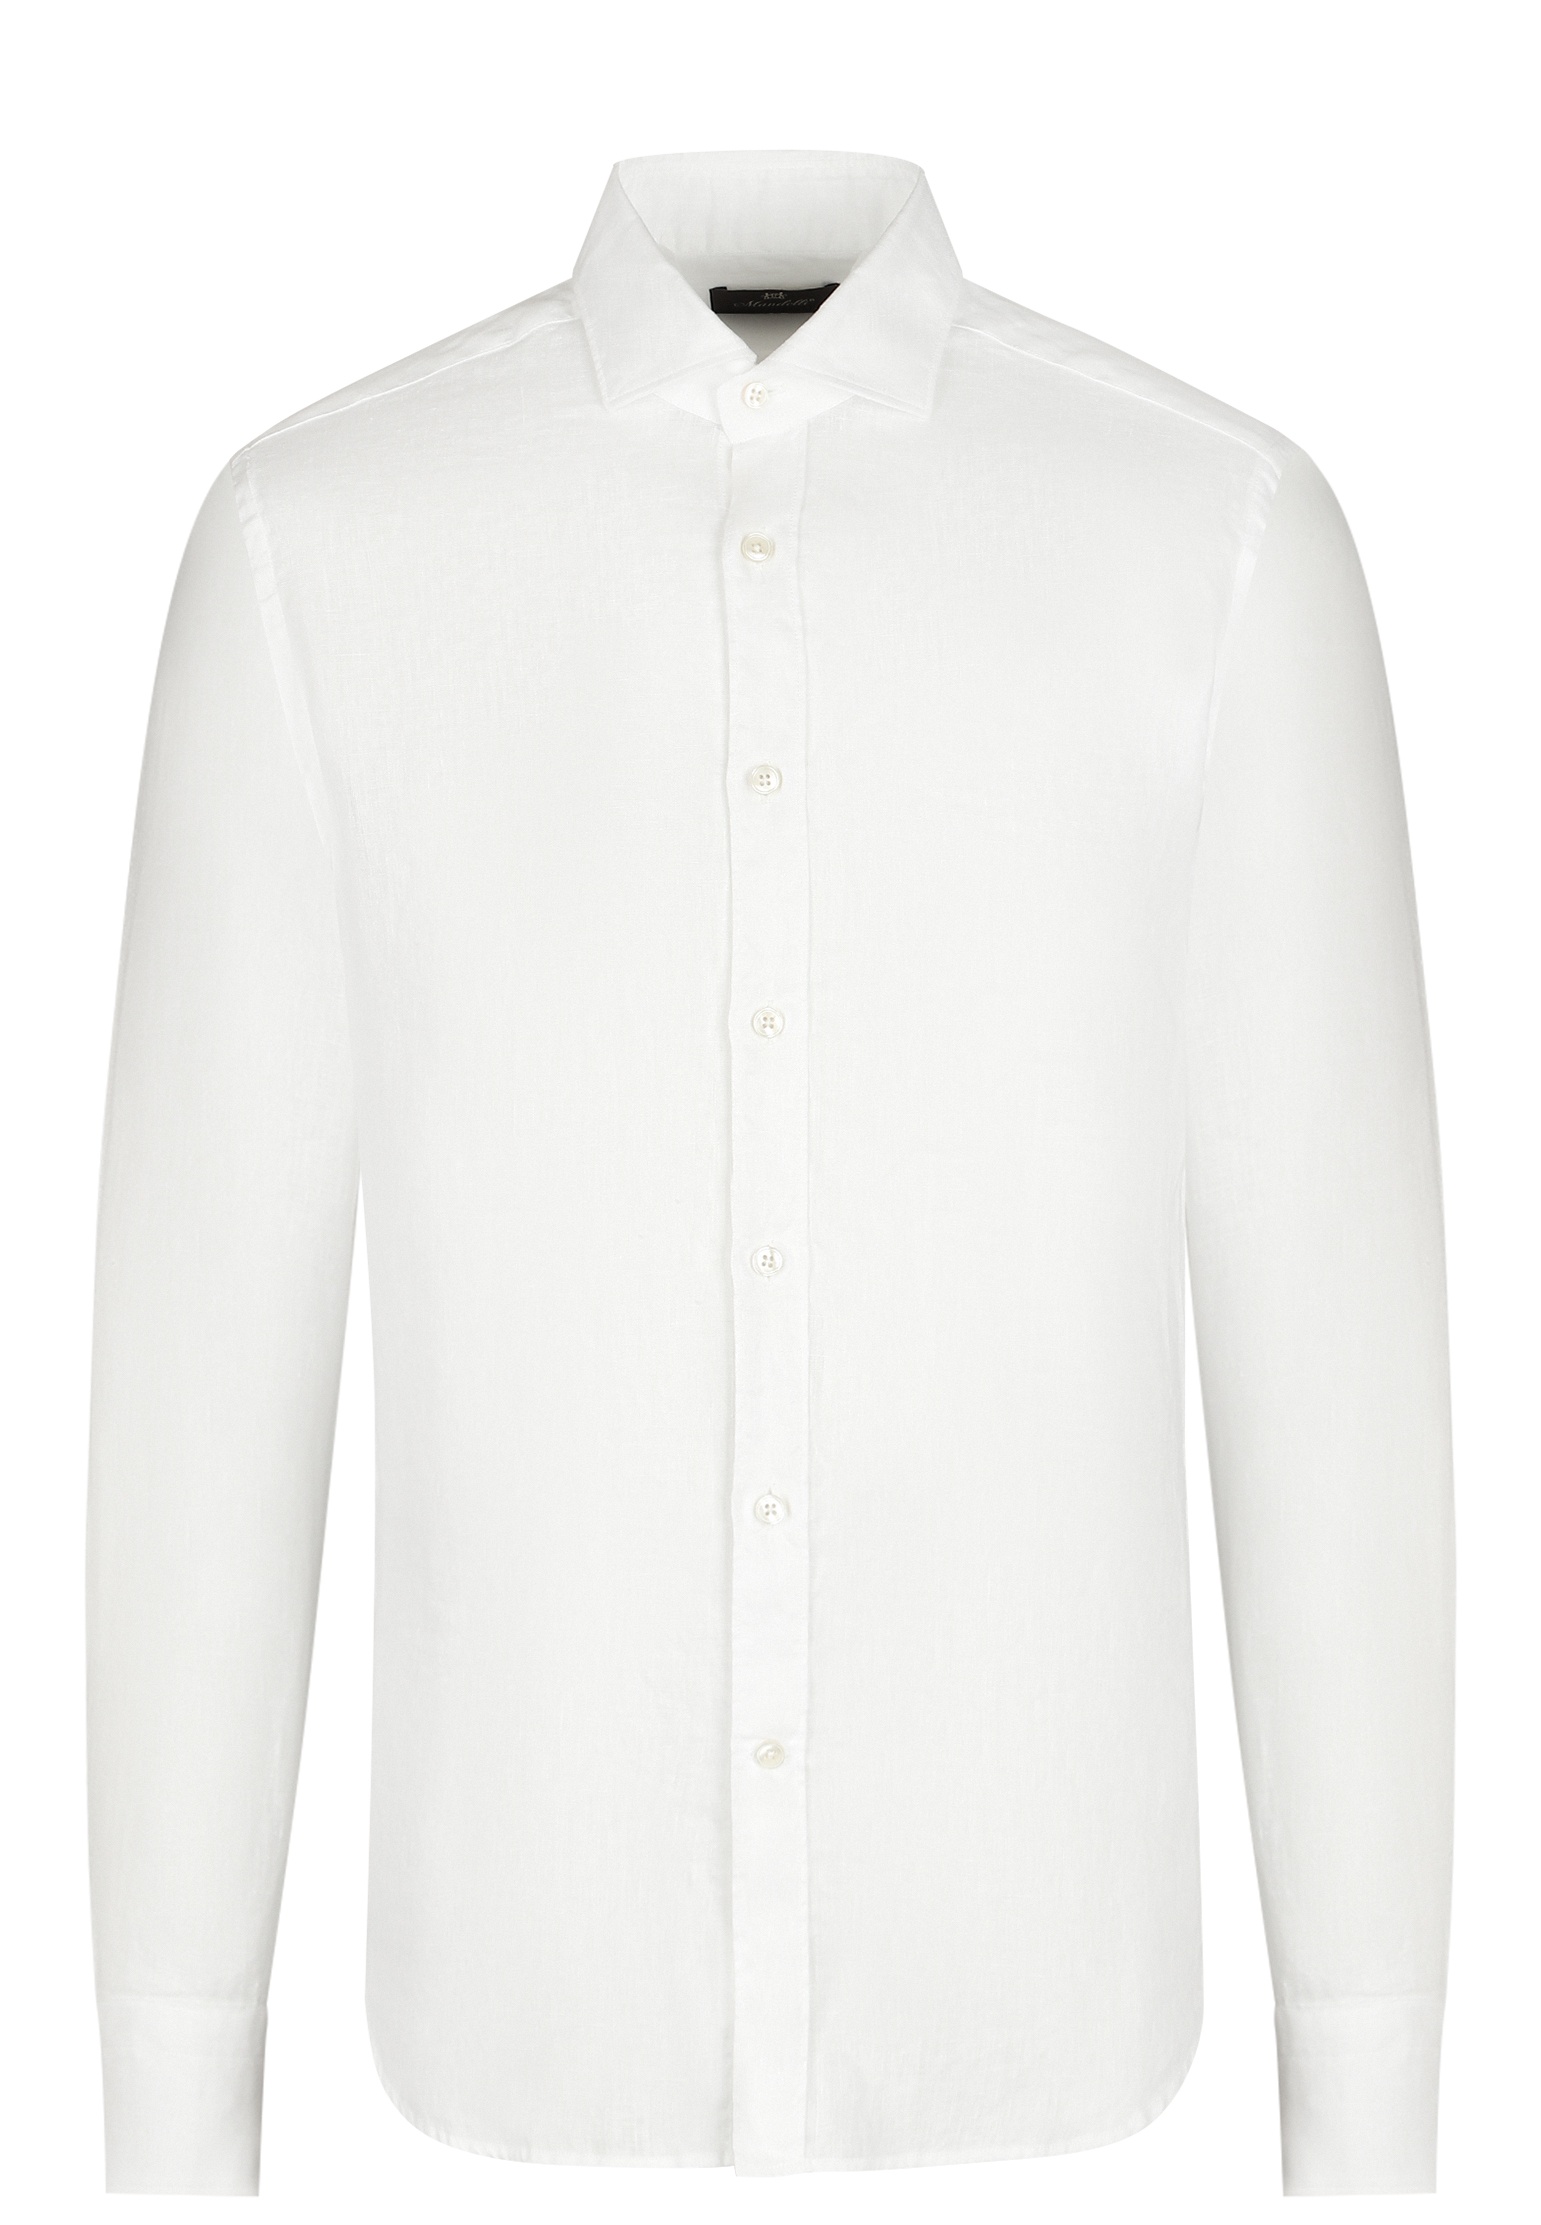 Рубашка MANDELLI Белый, размер 41